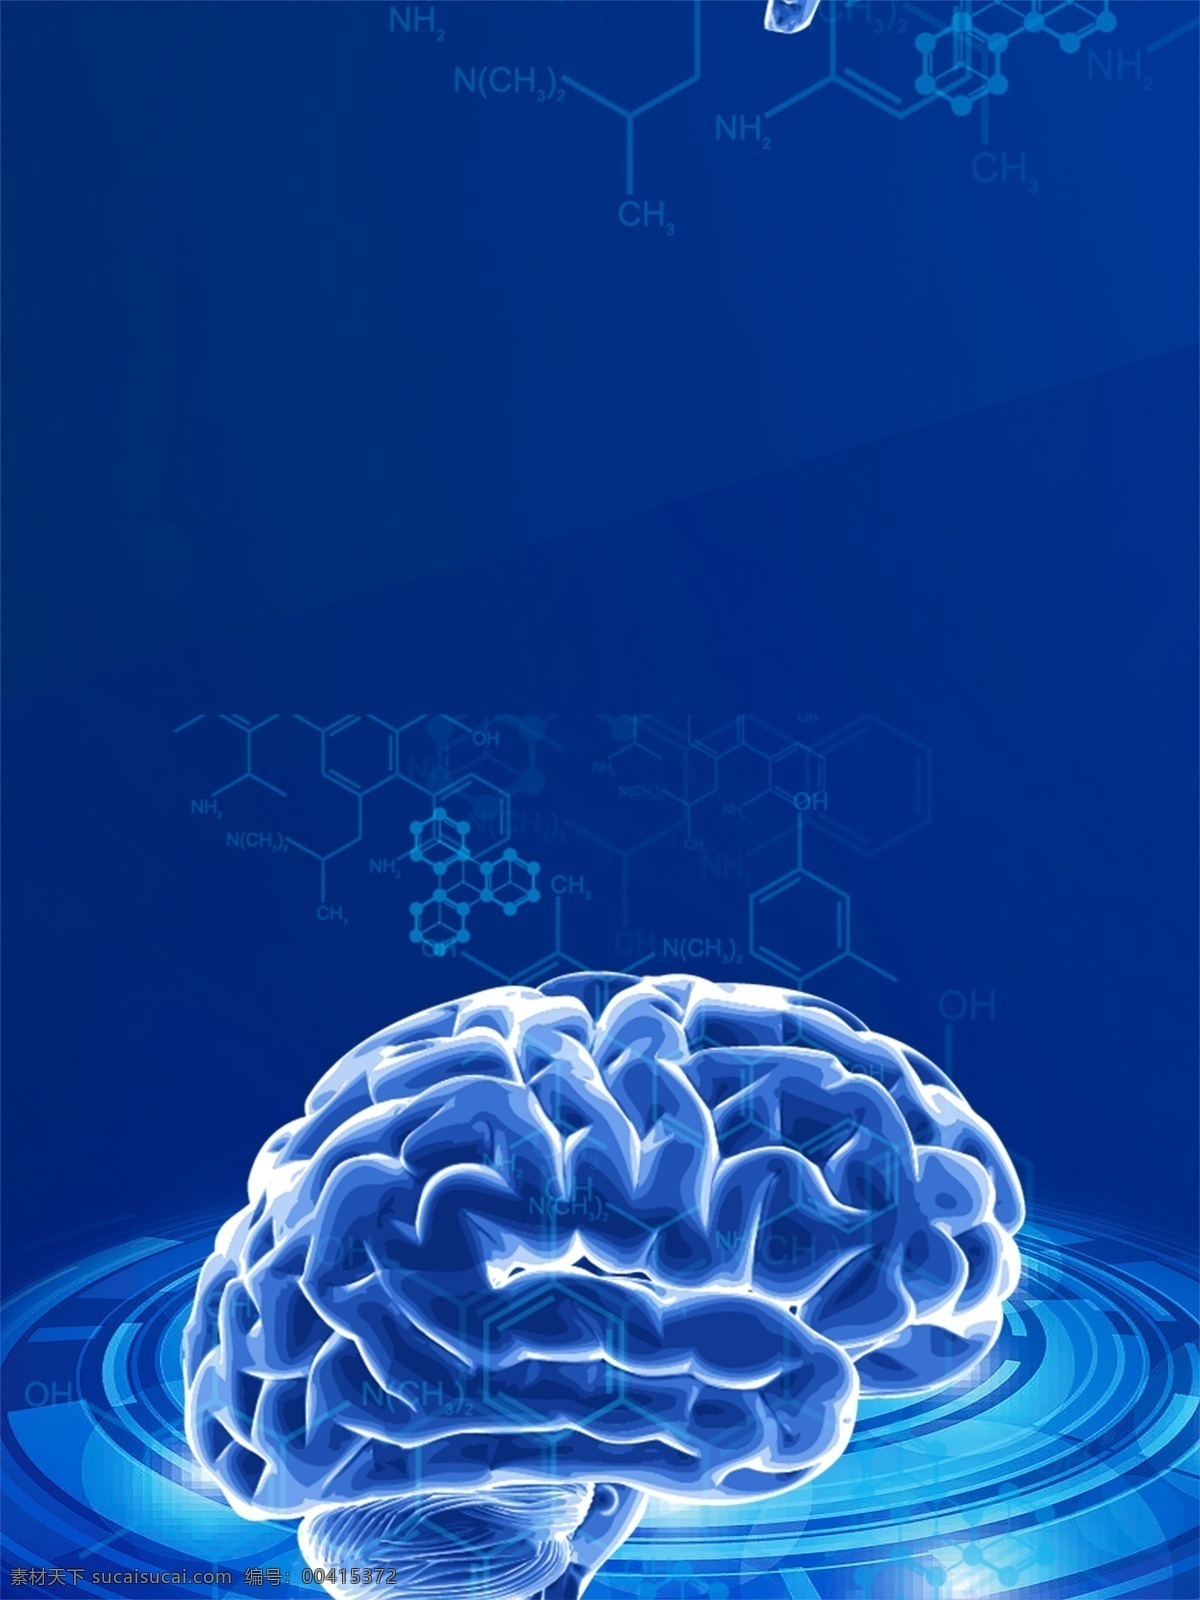 创意 人工 大脑 智能 科技 背景 蓝色背景 动感 背景素材 人工智能 人体大脑 立体 发光 网格 广告背景 广告背景素材 数据信息 信息技术 数据素材